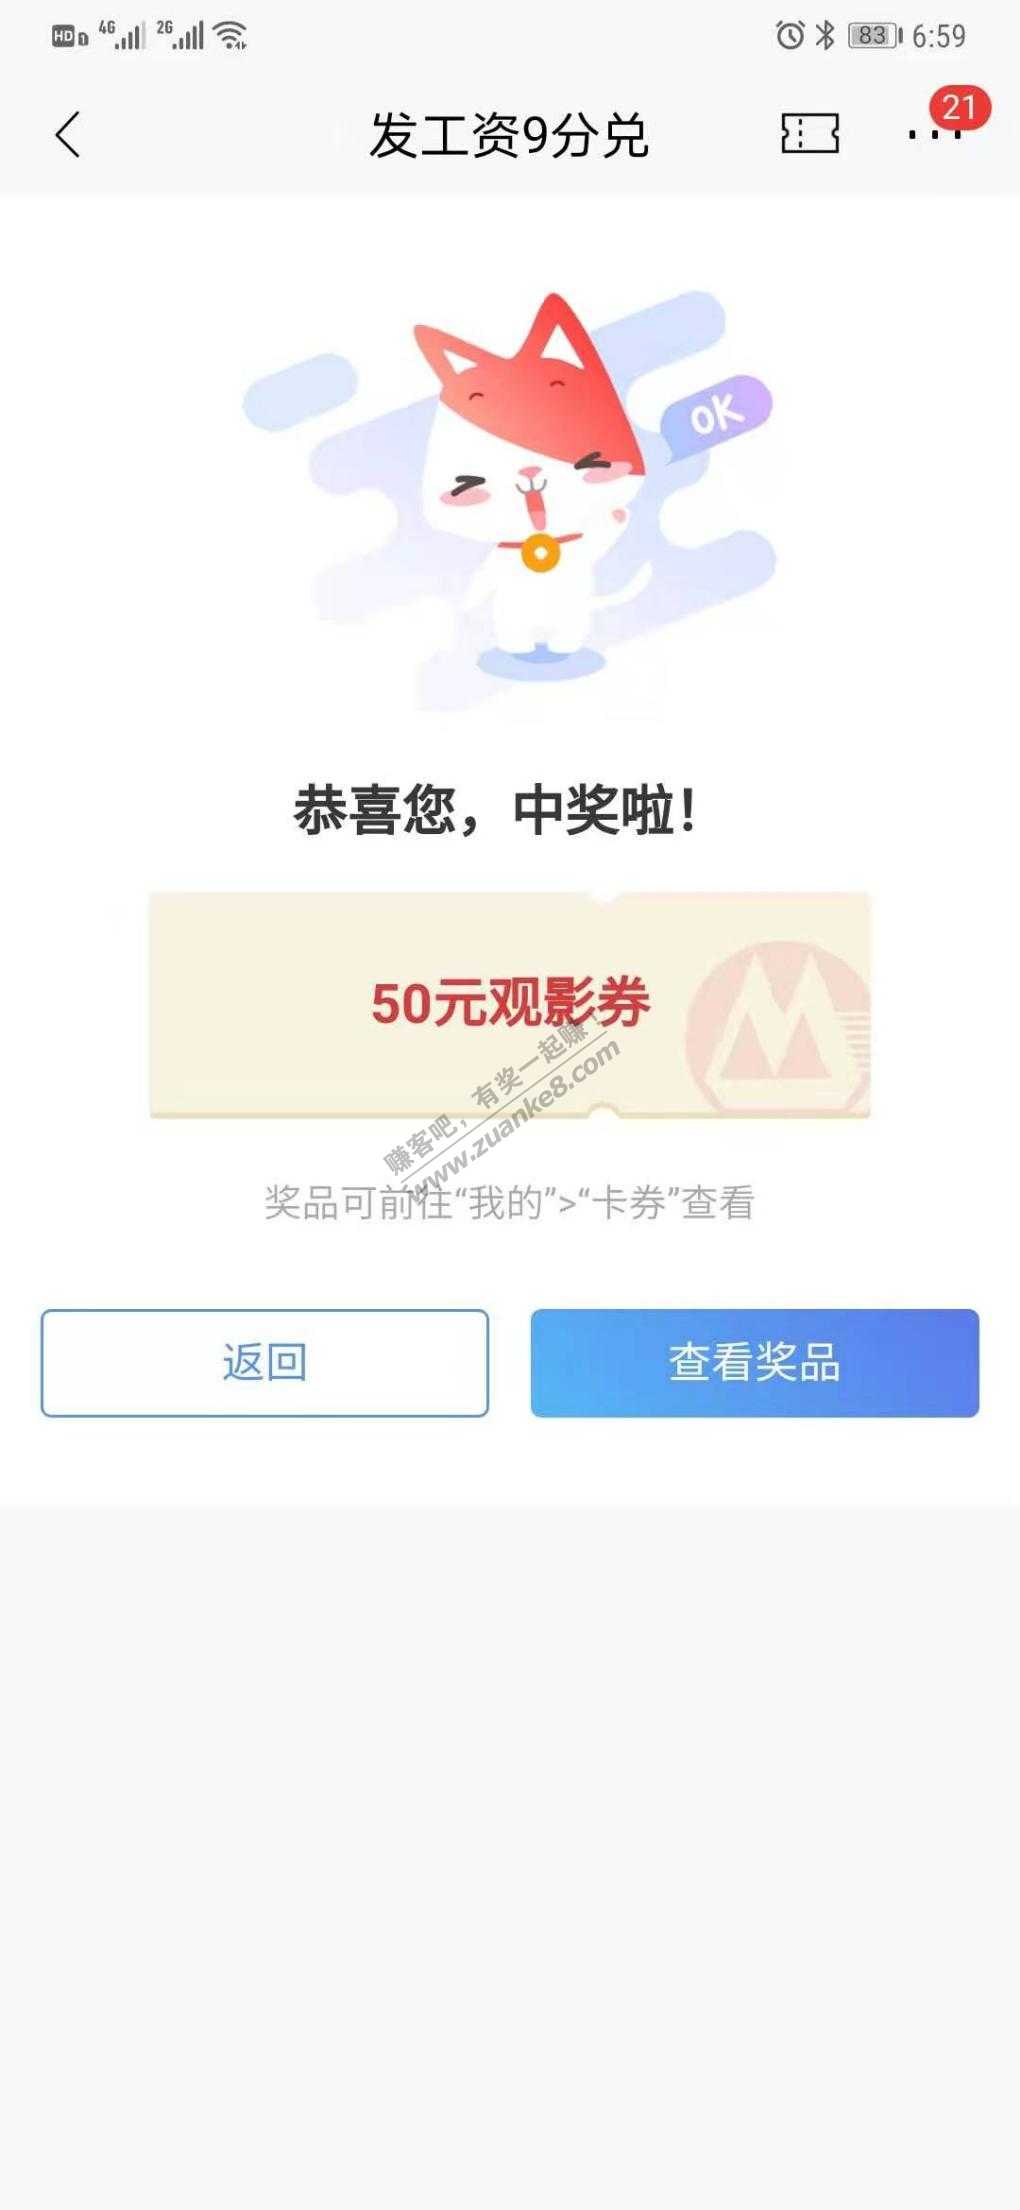 zhao 工资卡 影票小水-惠小助(52huixz.com)